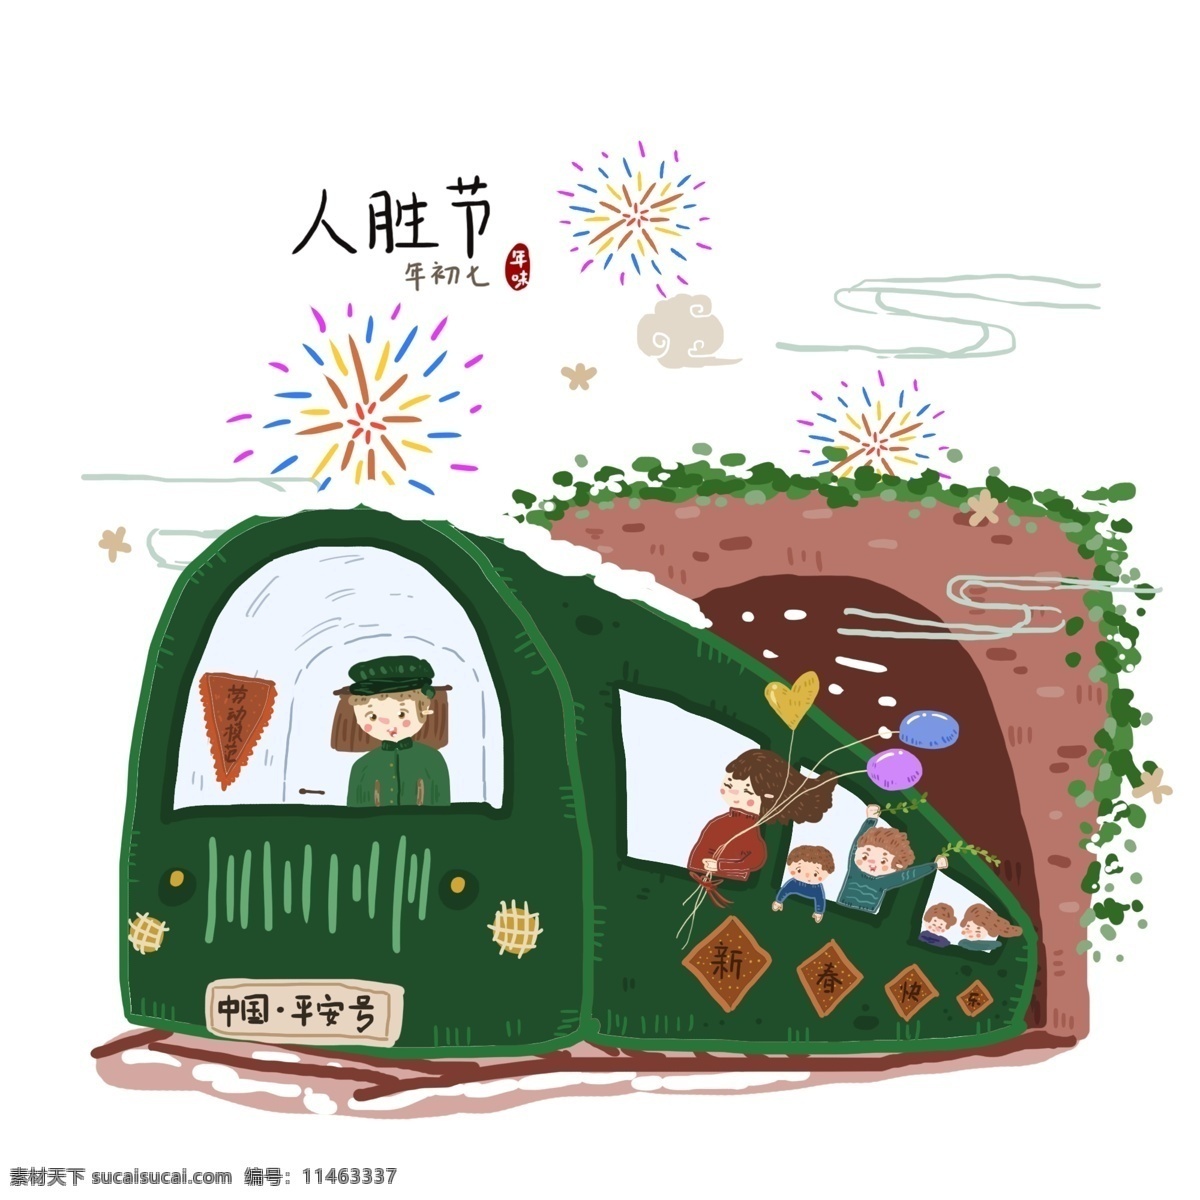 手绘 过年 年初 七人 胜 节 习俗 年味 元素 火车 离家 年初七 人胜节